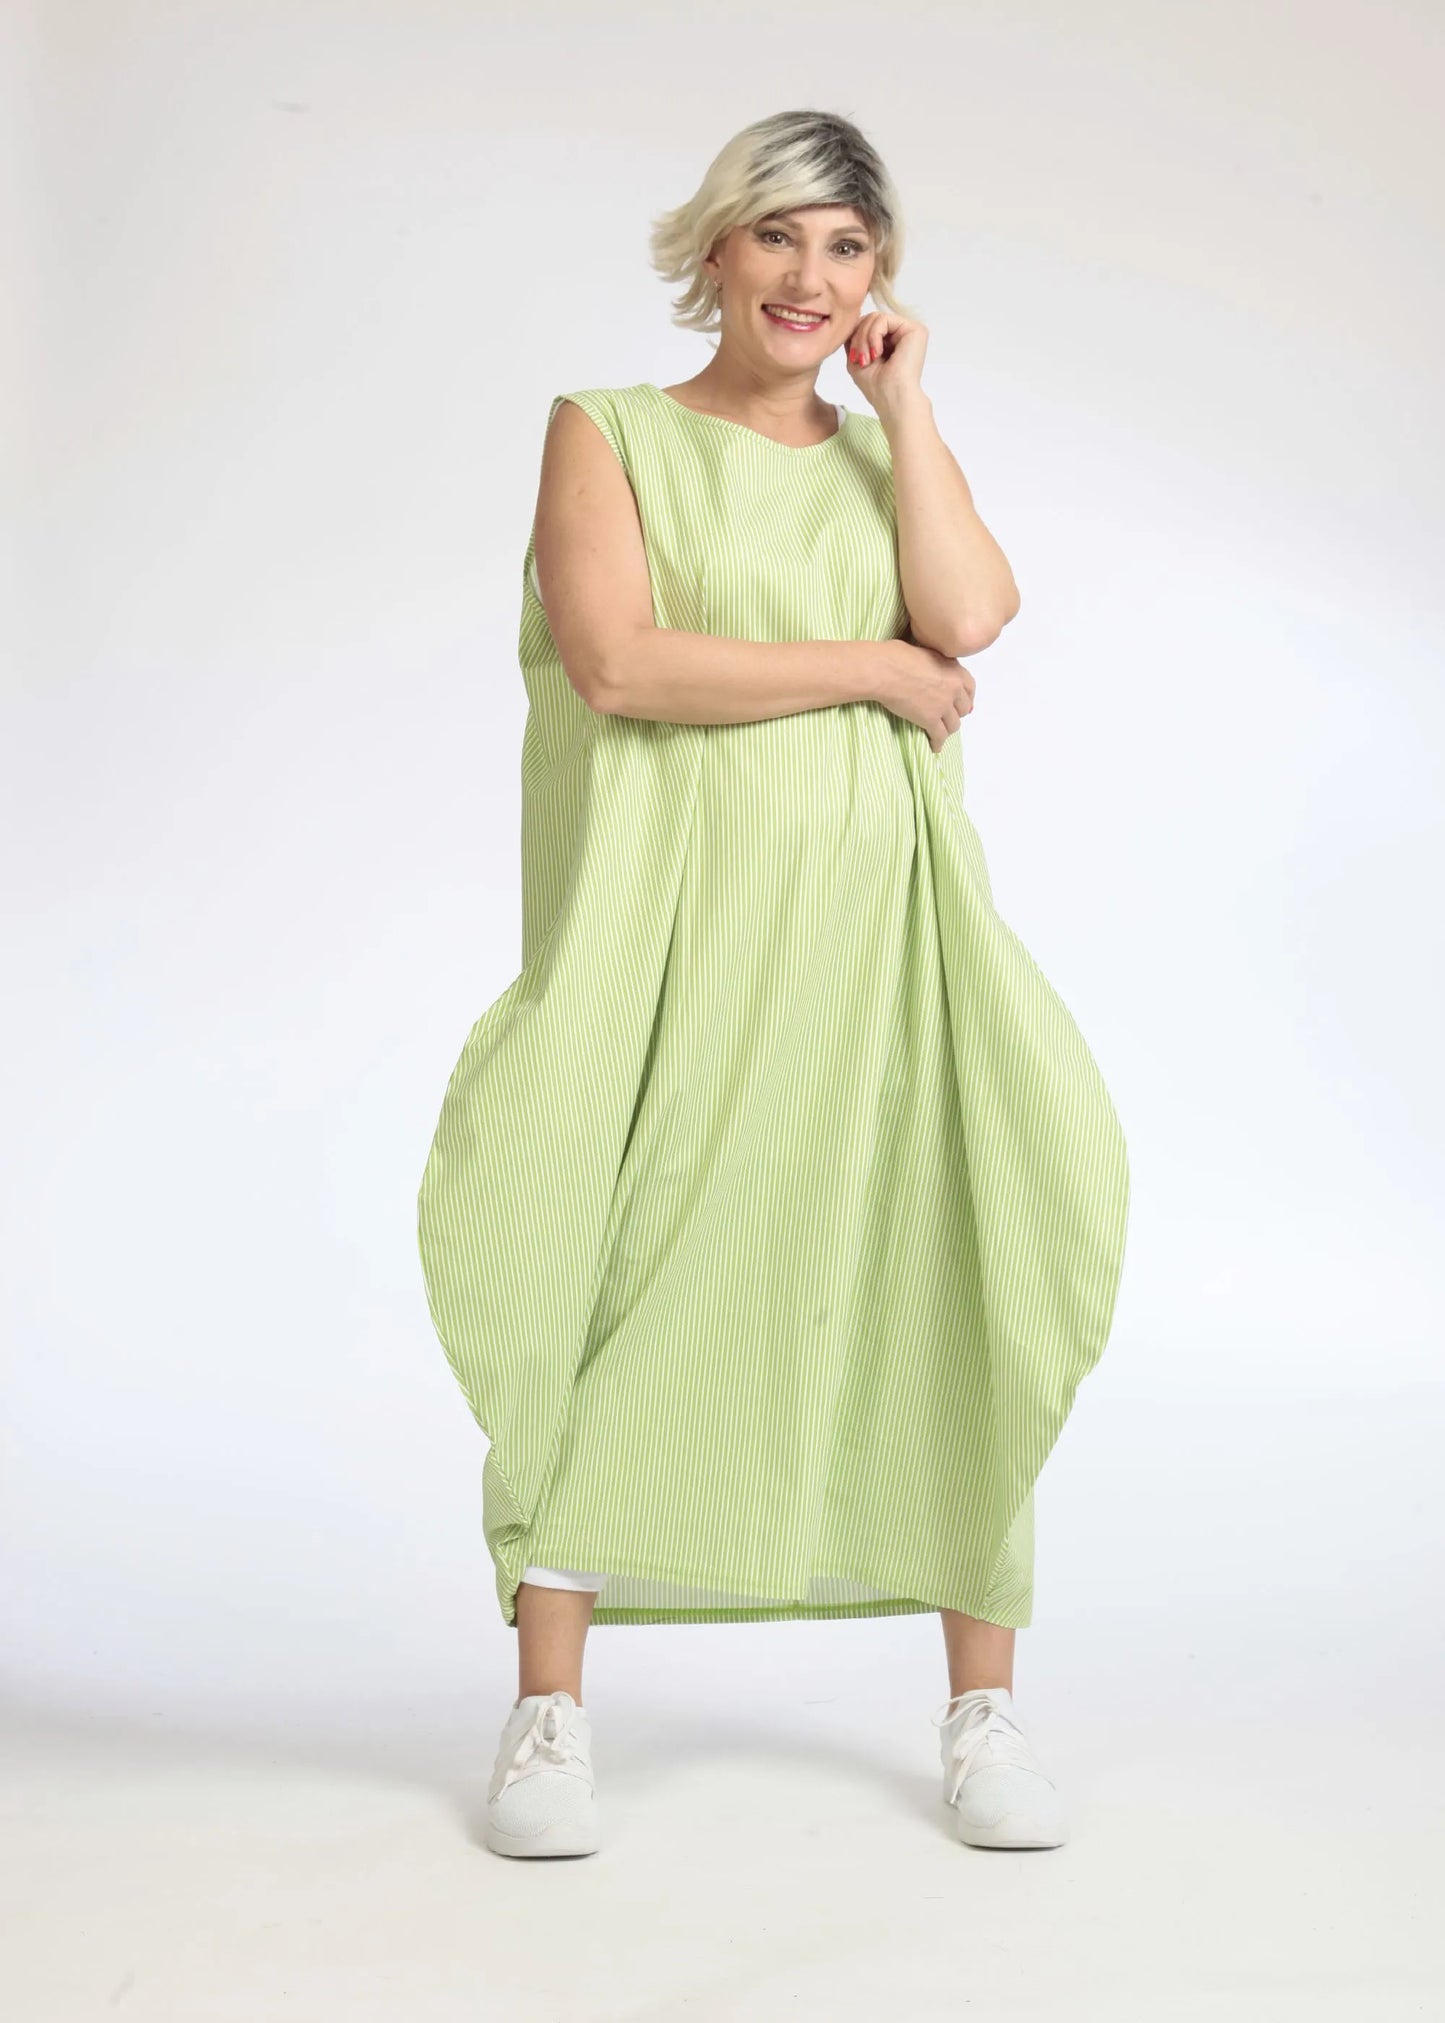 Sommer Kleid in Ballon Form aus glatter Popeline Qualität, Verena in Apfelgrün-Weiß